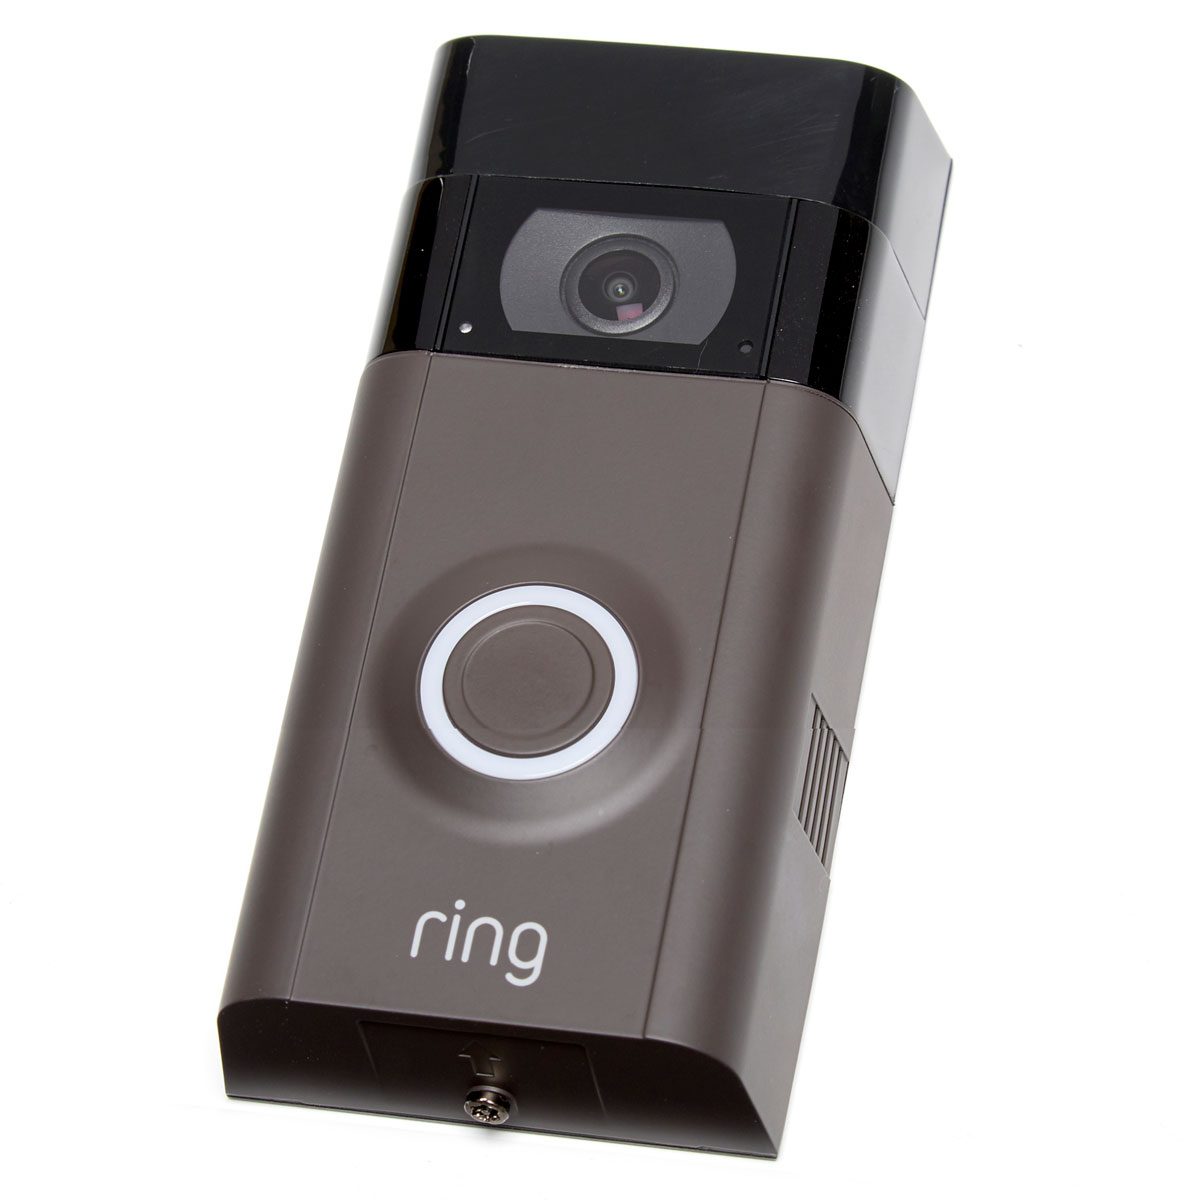 ring doorbell 2 basic plan